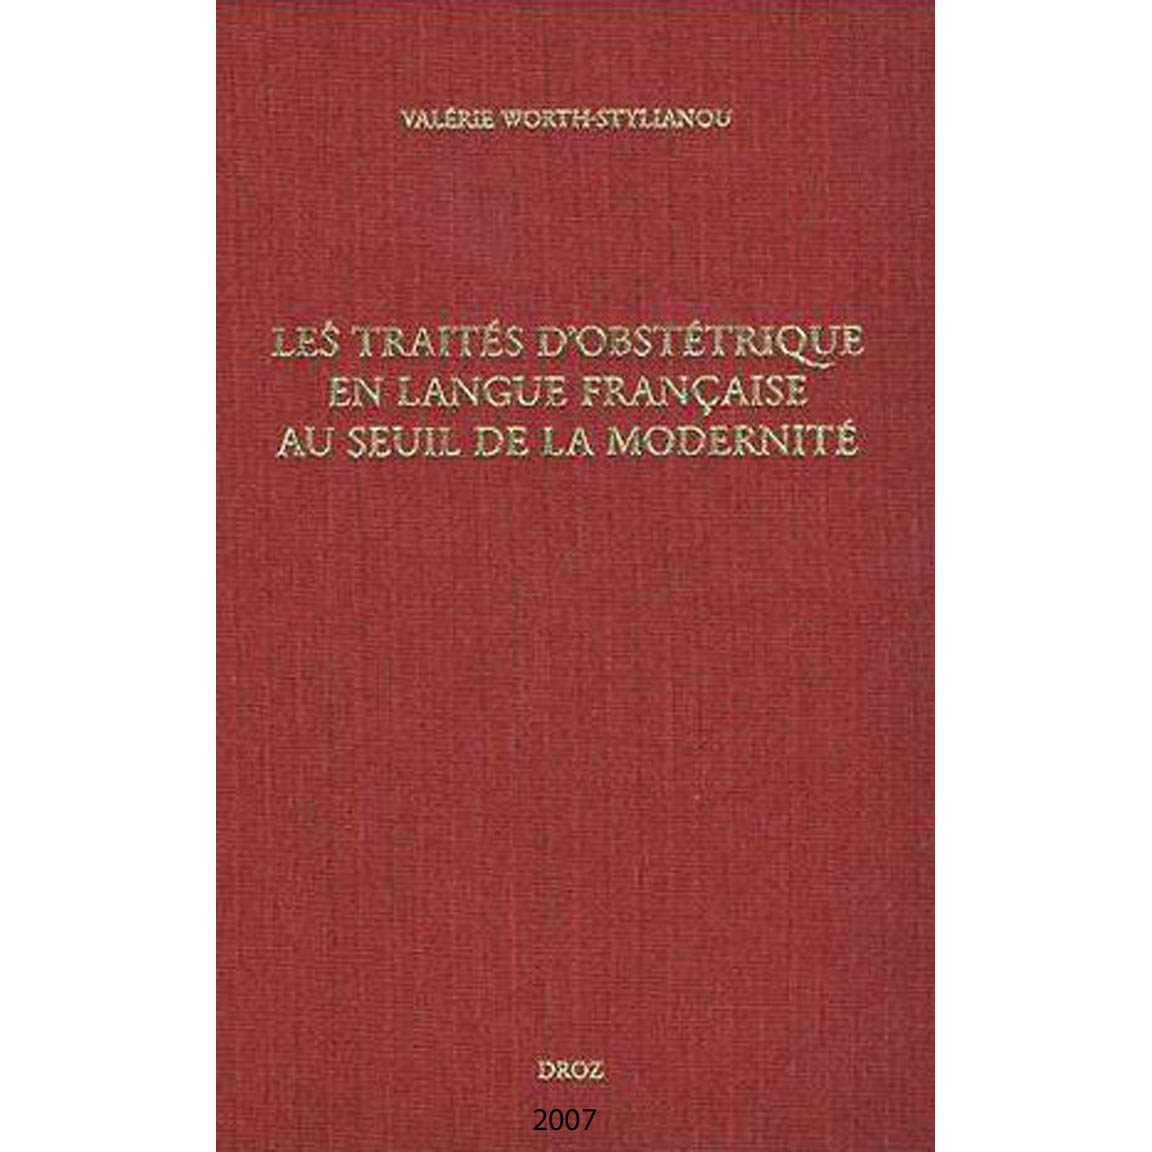 2007-WORTH-STYLIANOU-Traités d'obstétrique- title page